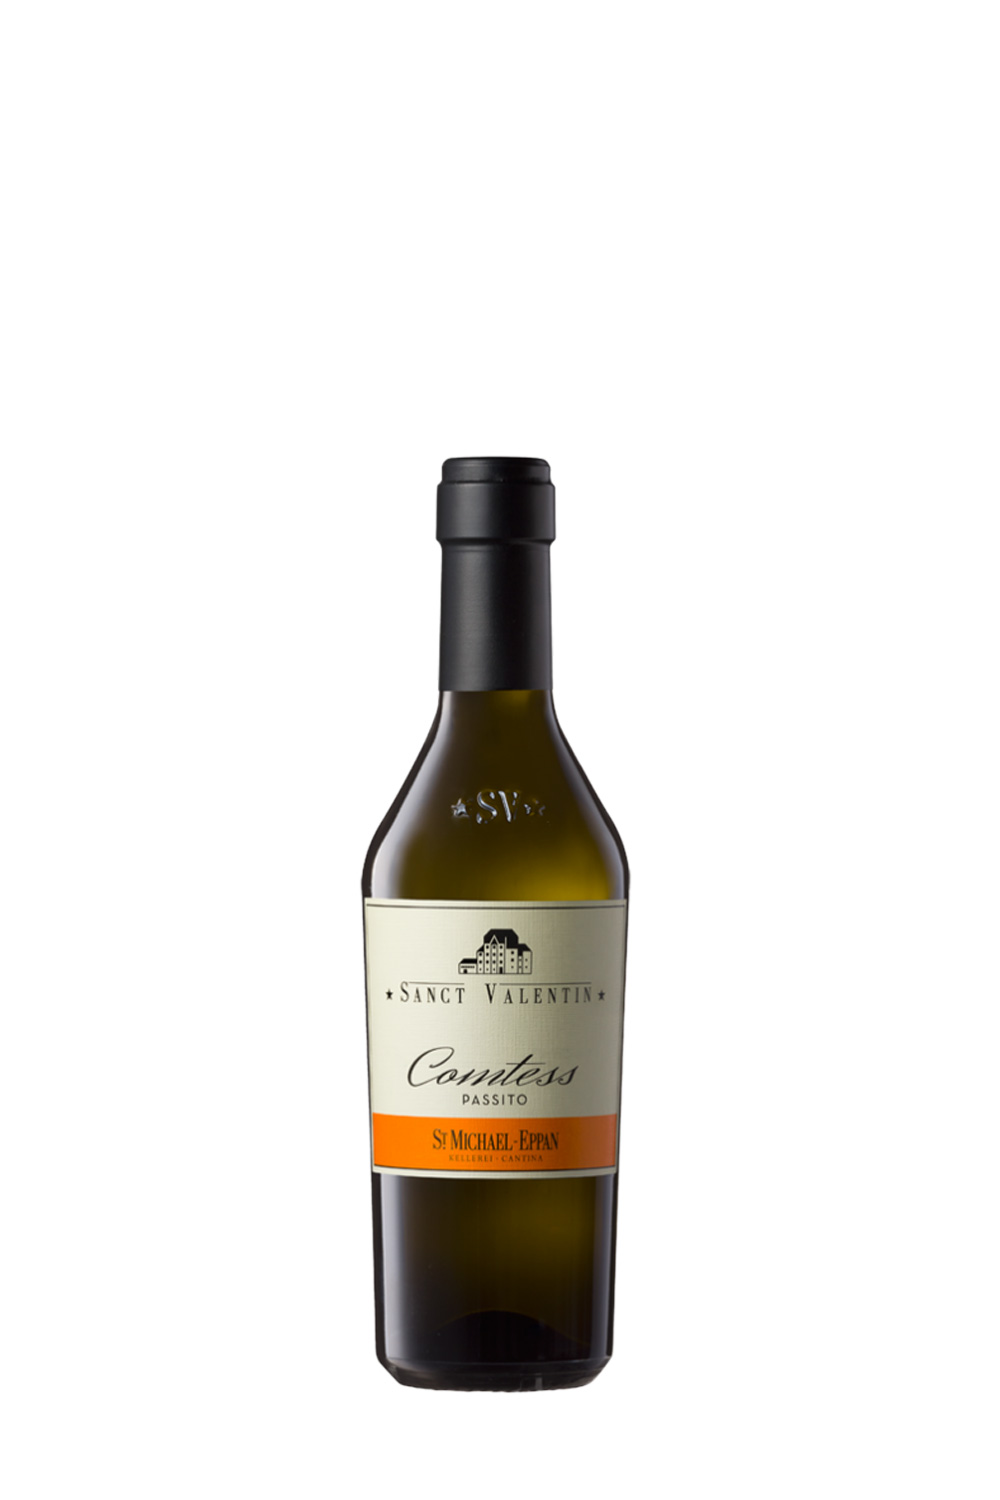 St. Michael-Eppan Sanct Valentin Comtess Passito DOC 2021 Halbe Flasche  (0,375 L) | Online kaufen bei Senti Vini - Weine aus Italien